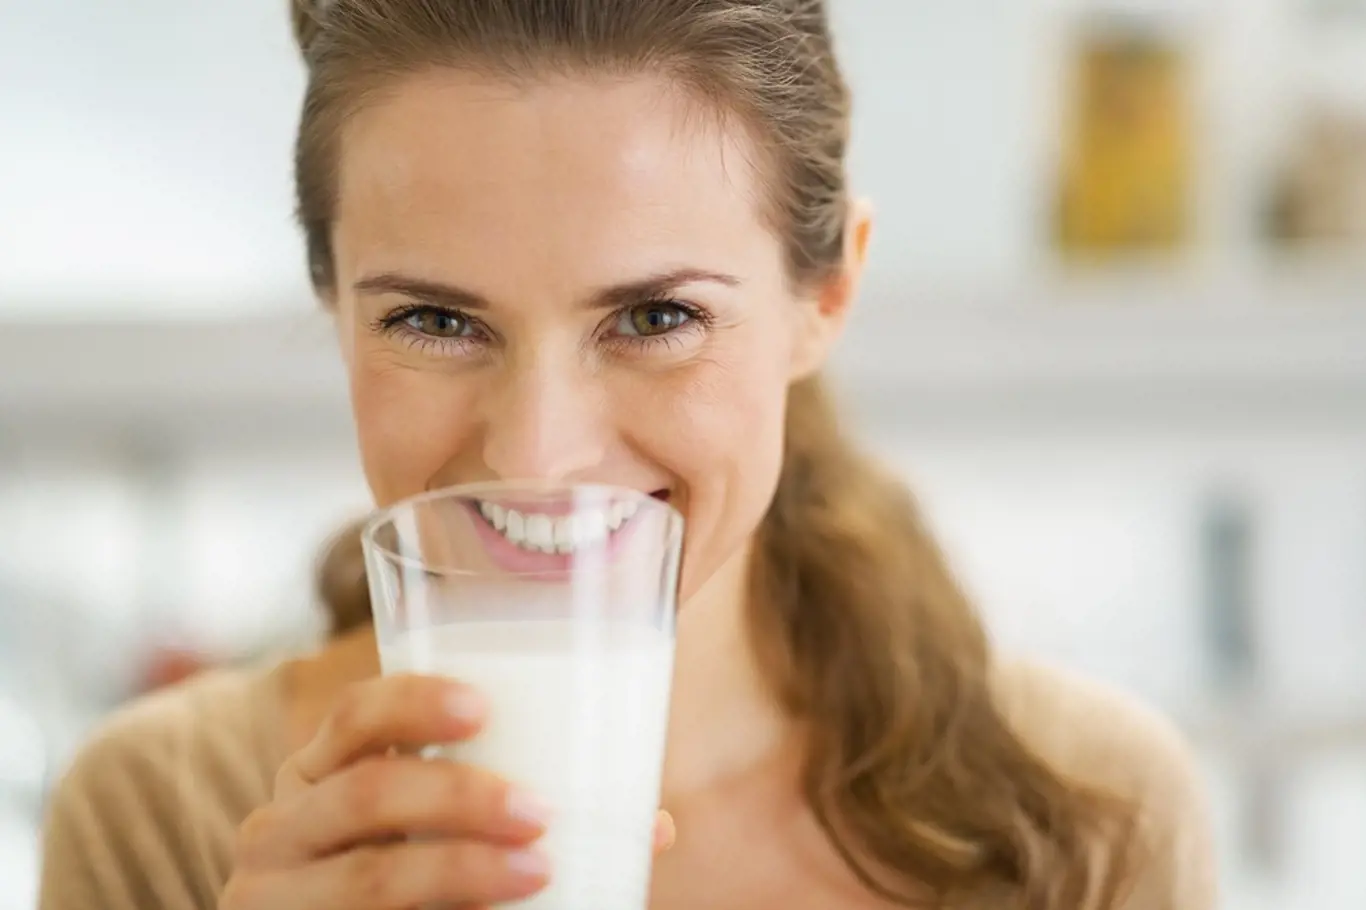 Mléko nemá v posledních letech moc dobrou pověst. Přitom je to zbytečné